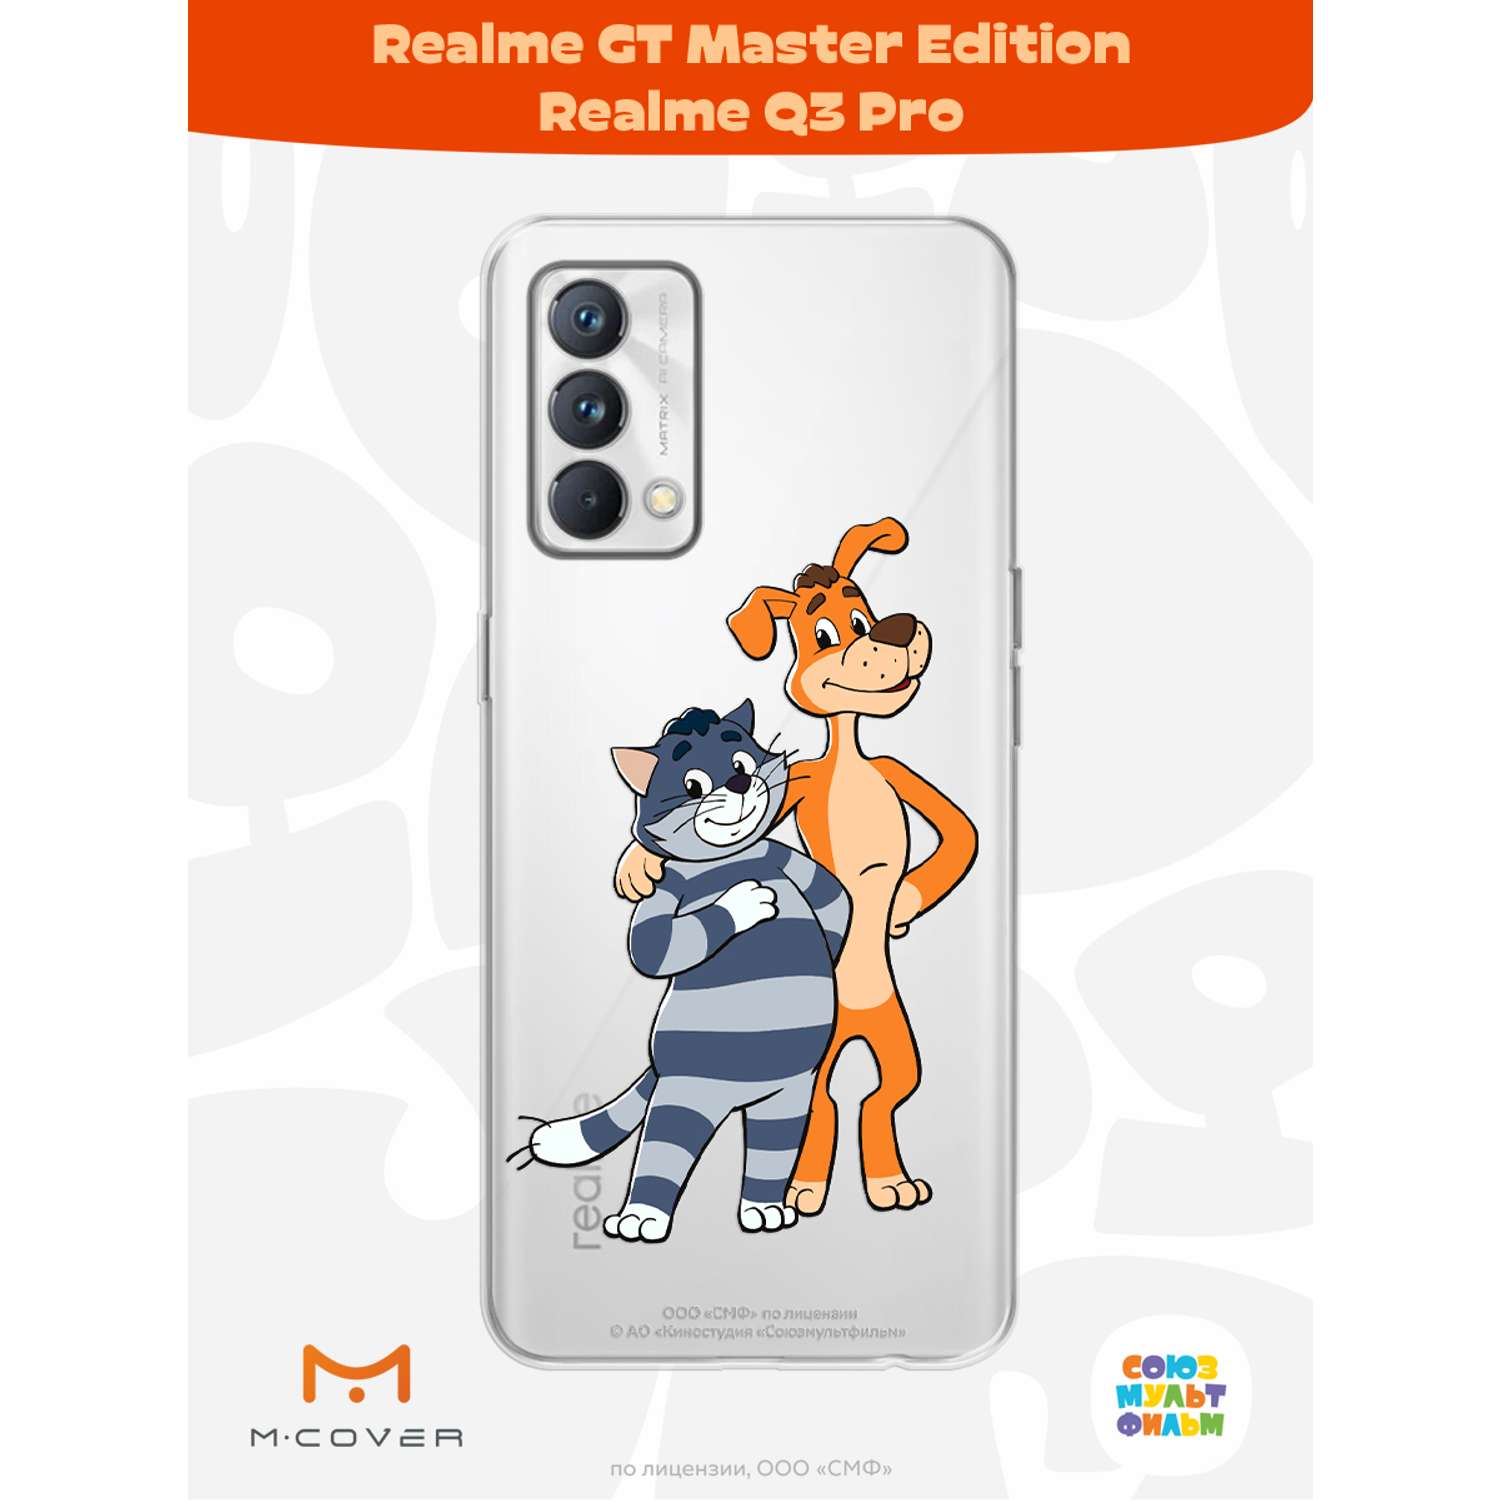 Силиконовый чехол Mcover для смартфона Realme GT Master Edition Q3 Pro Союзмультфильм Шарик и Матроскин - фото 2